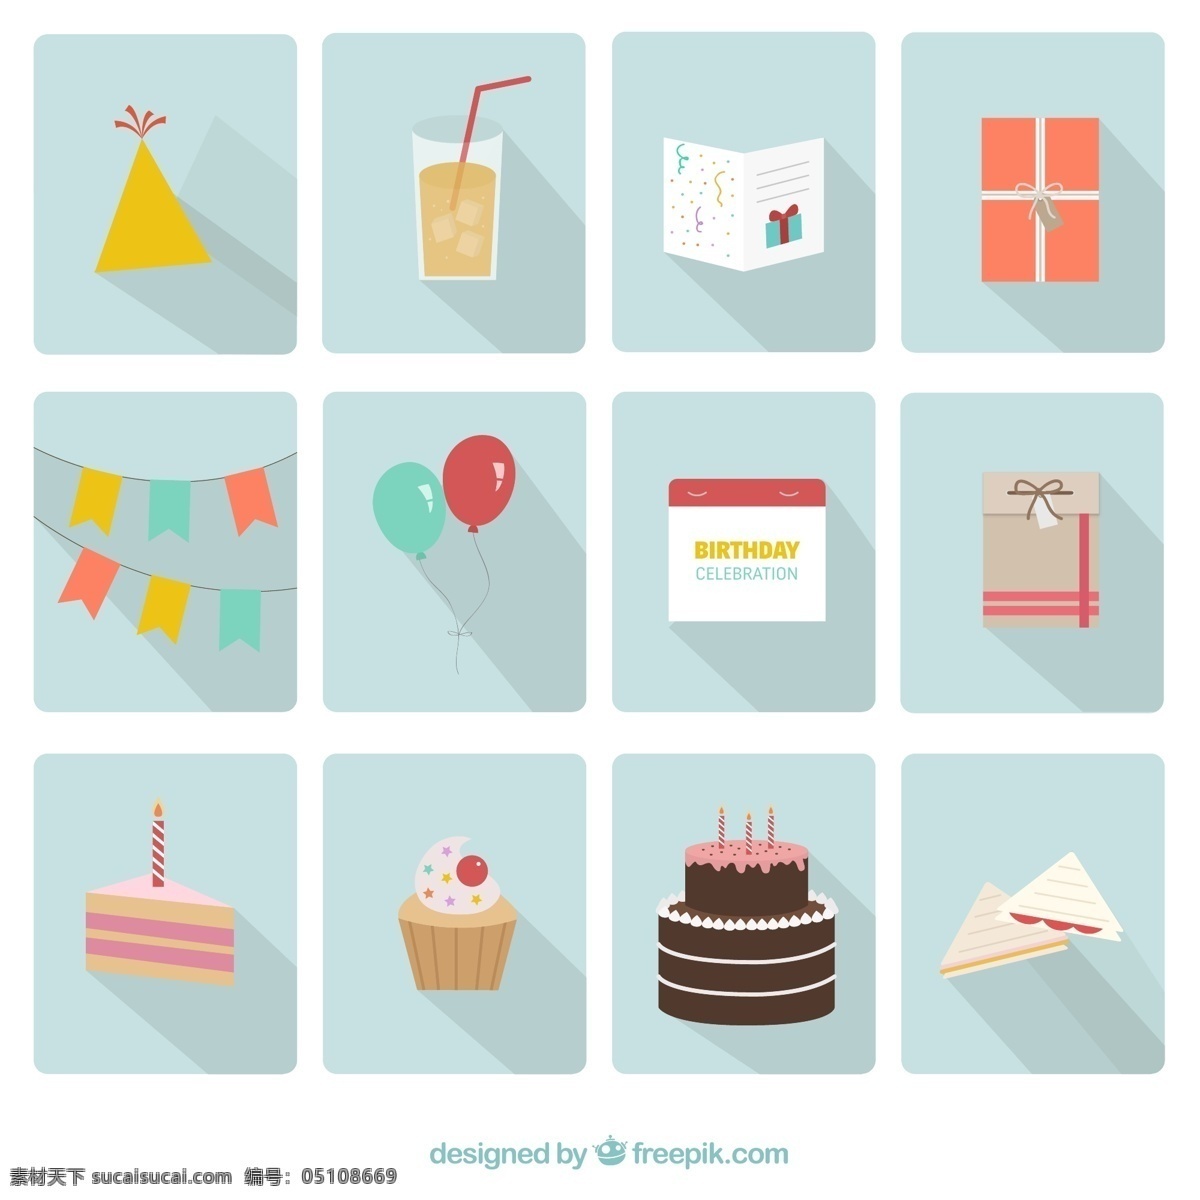 快乐 生日 聚会 图标 食品 日历 装盒 蛋糕 礼品 巧克力 卡通 平面 气球 可爱